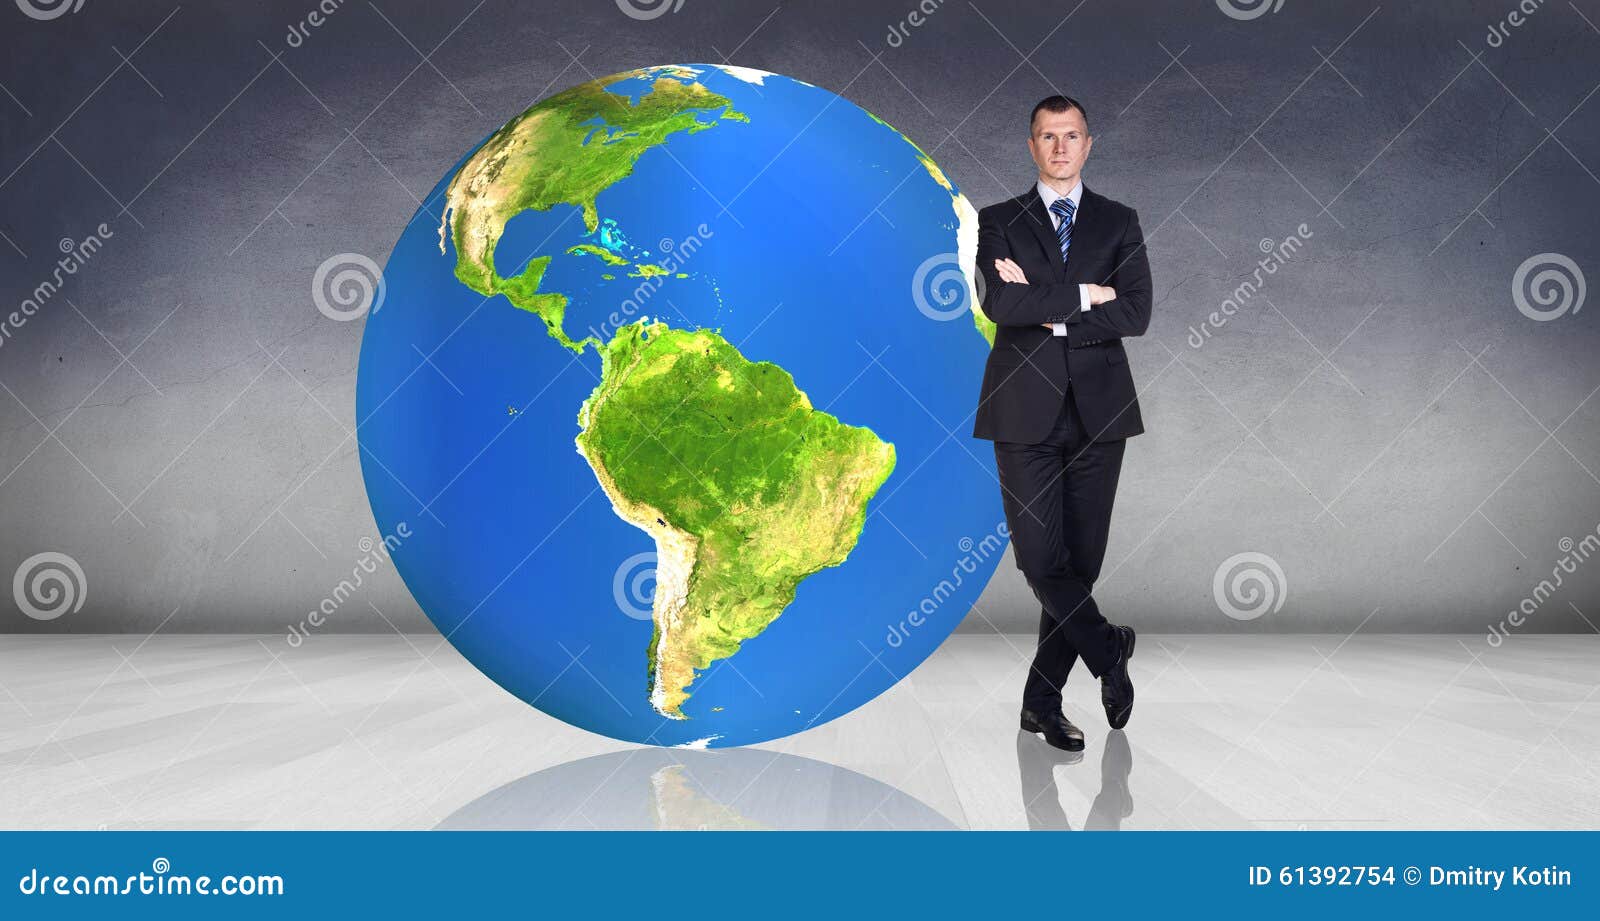 Земля больших людей. Мужчина сидит на земном шаре. Крупный мужчина на фоне земного шара. Стоит перед земным шаром. Земной шар, человек, Платон.